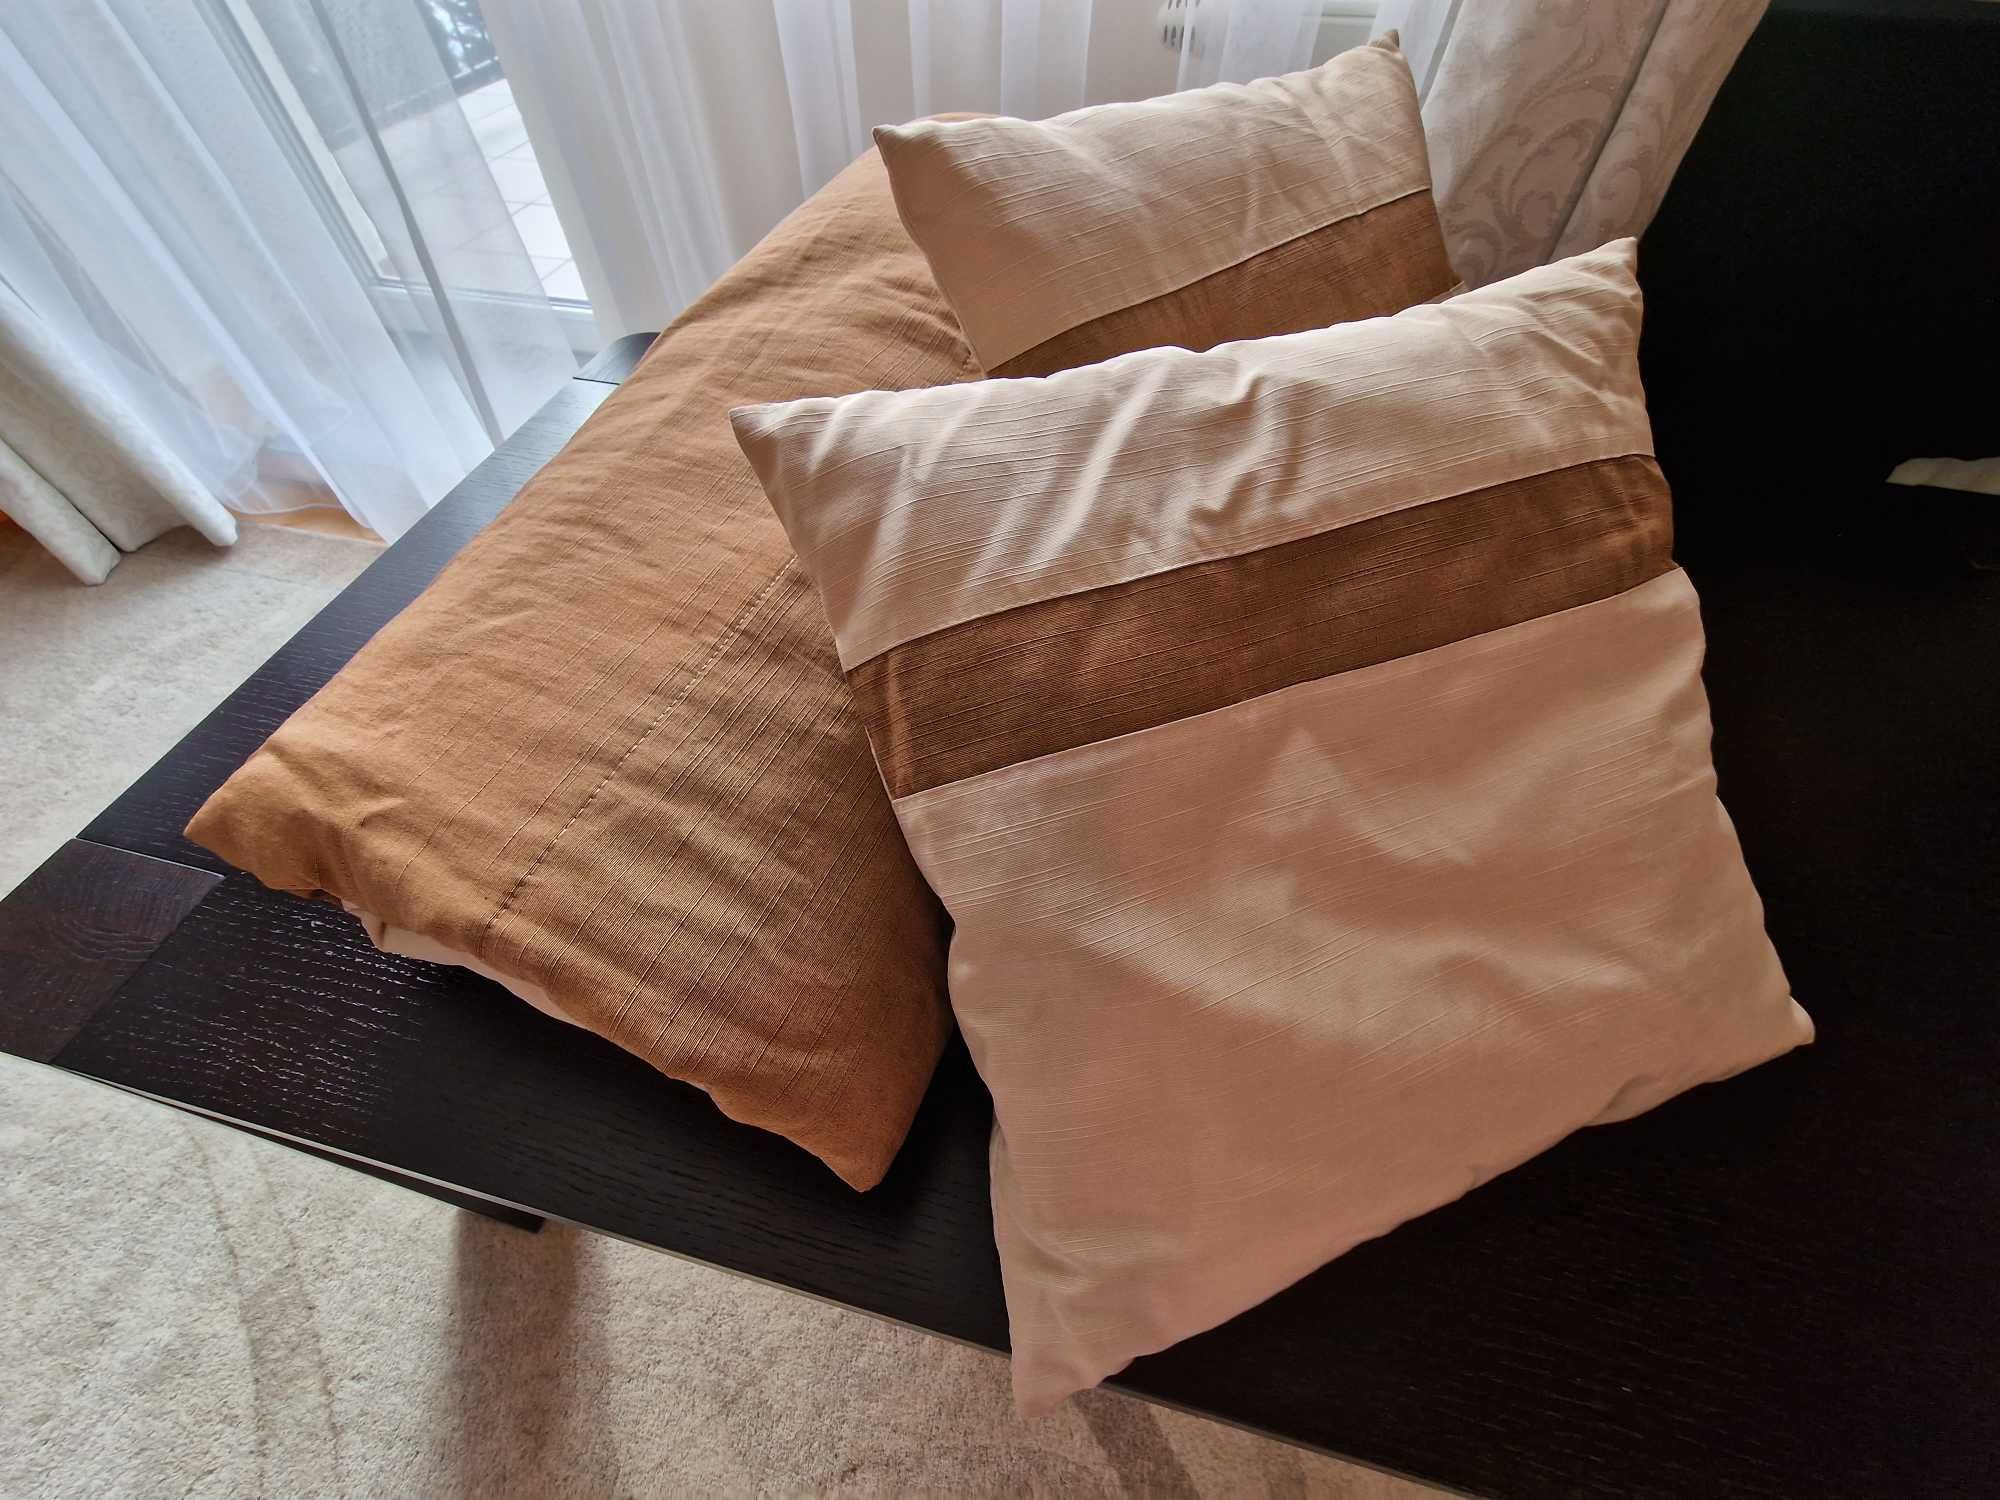 Kapa narzuta na łóżko 240cm x 220 cm + 2 poduszki